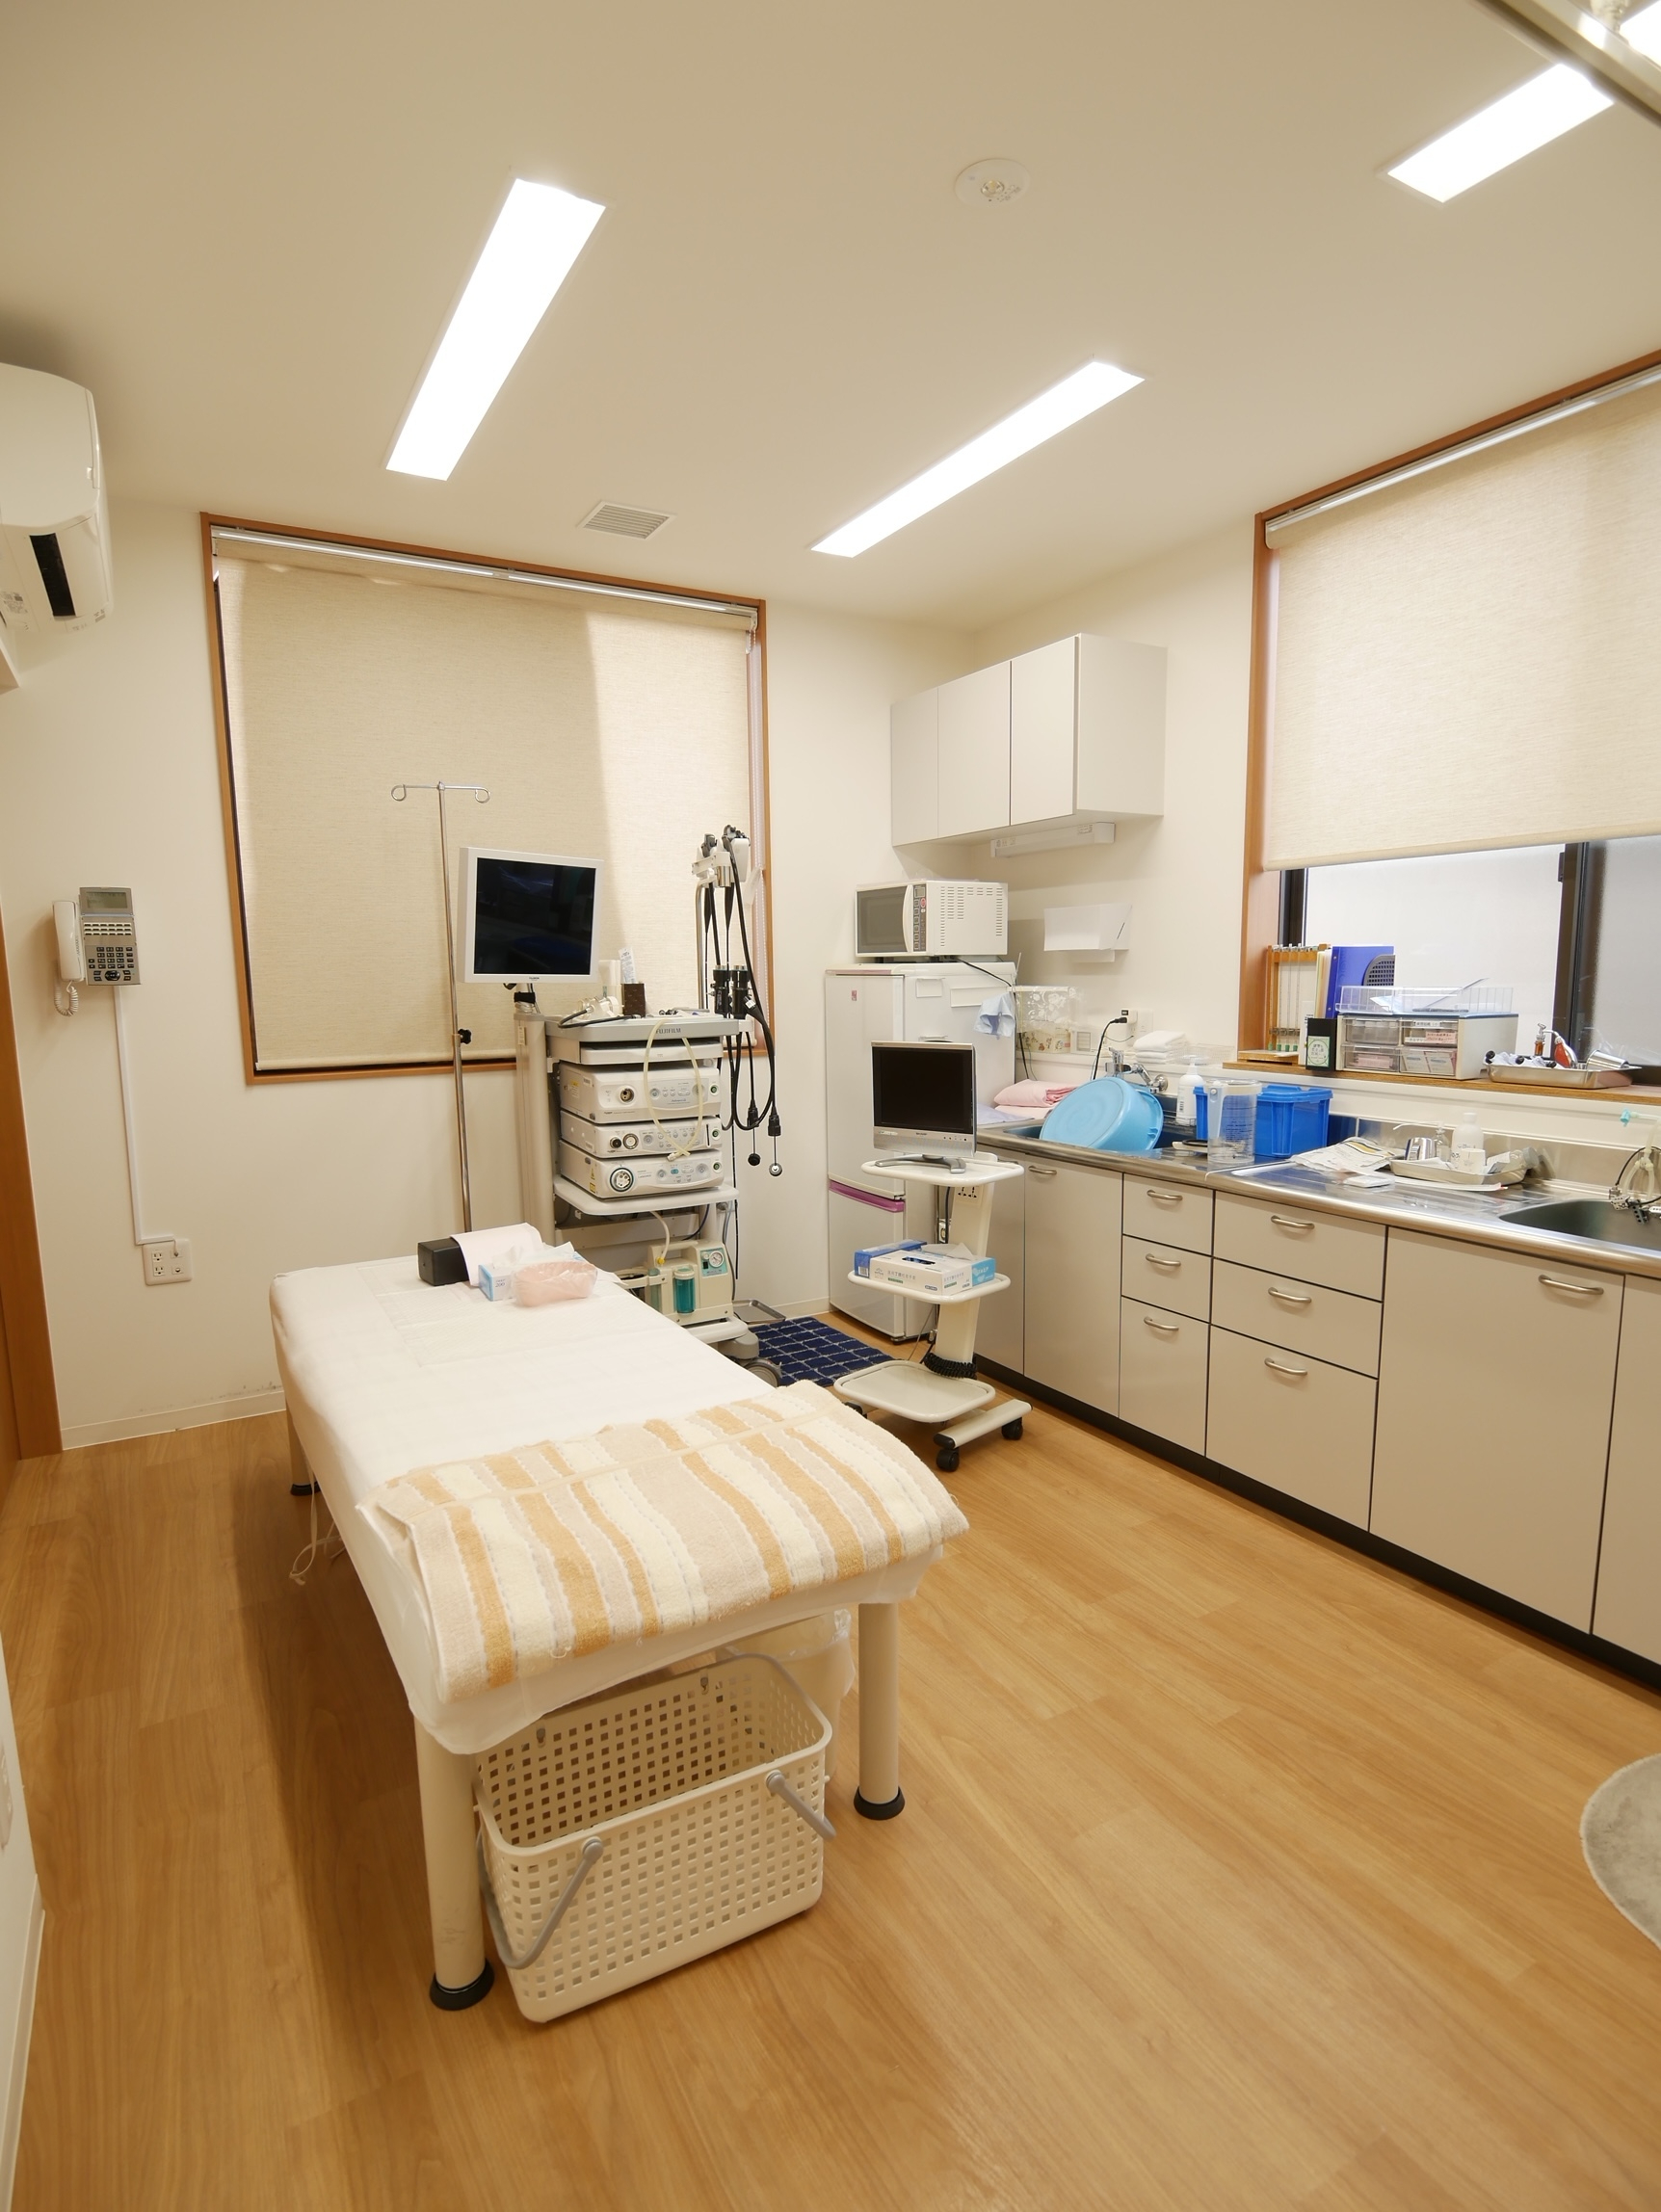 内視鏡検査室,やまね内科クリニック,奈良市,消化器内科,大和西大寺駅